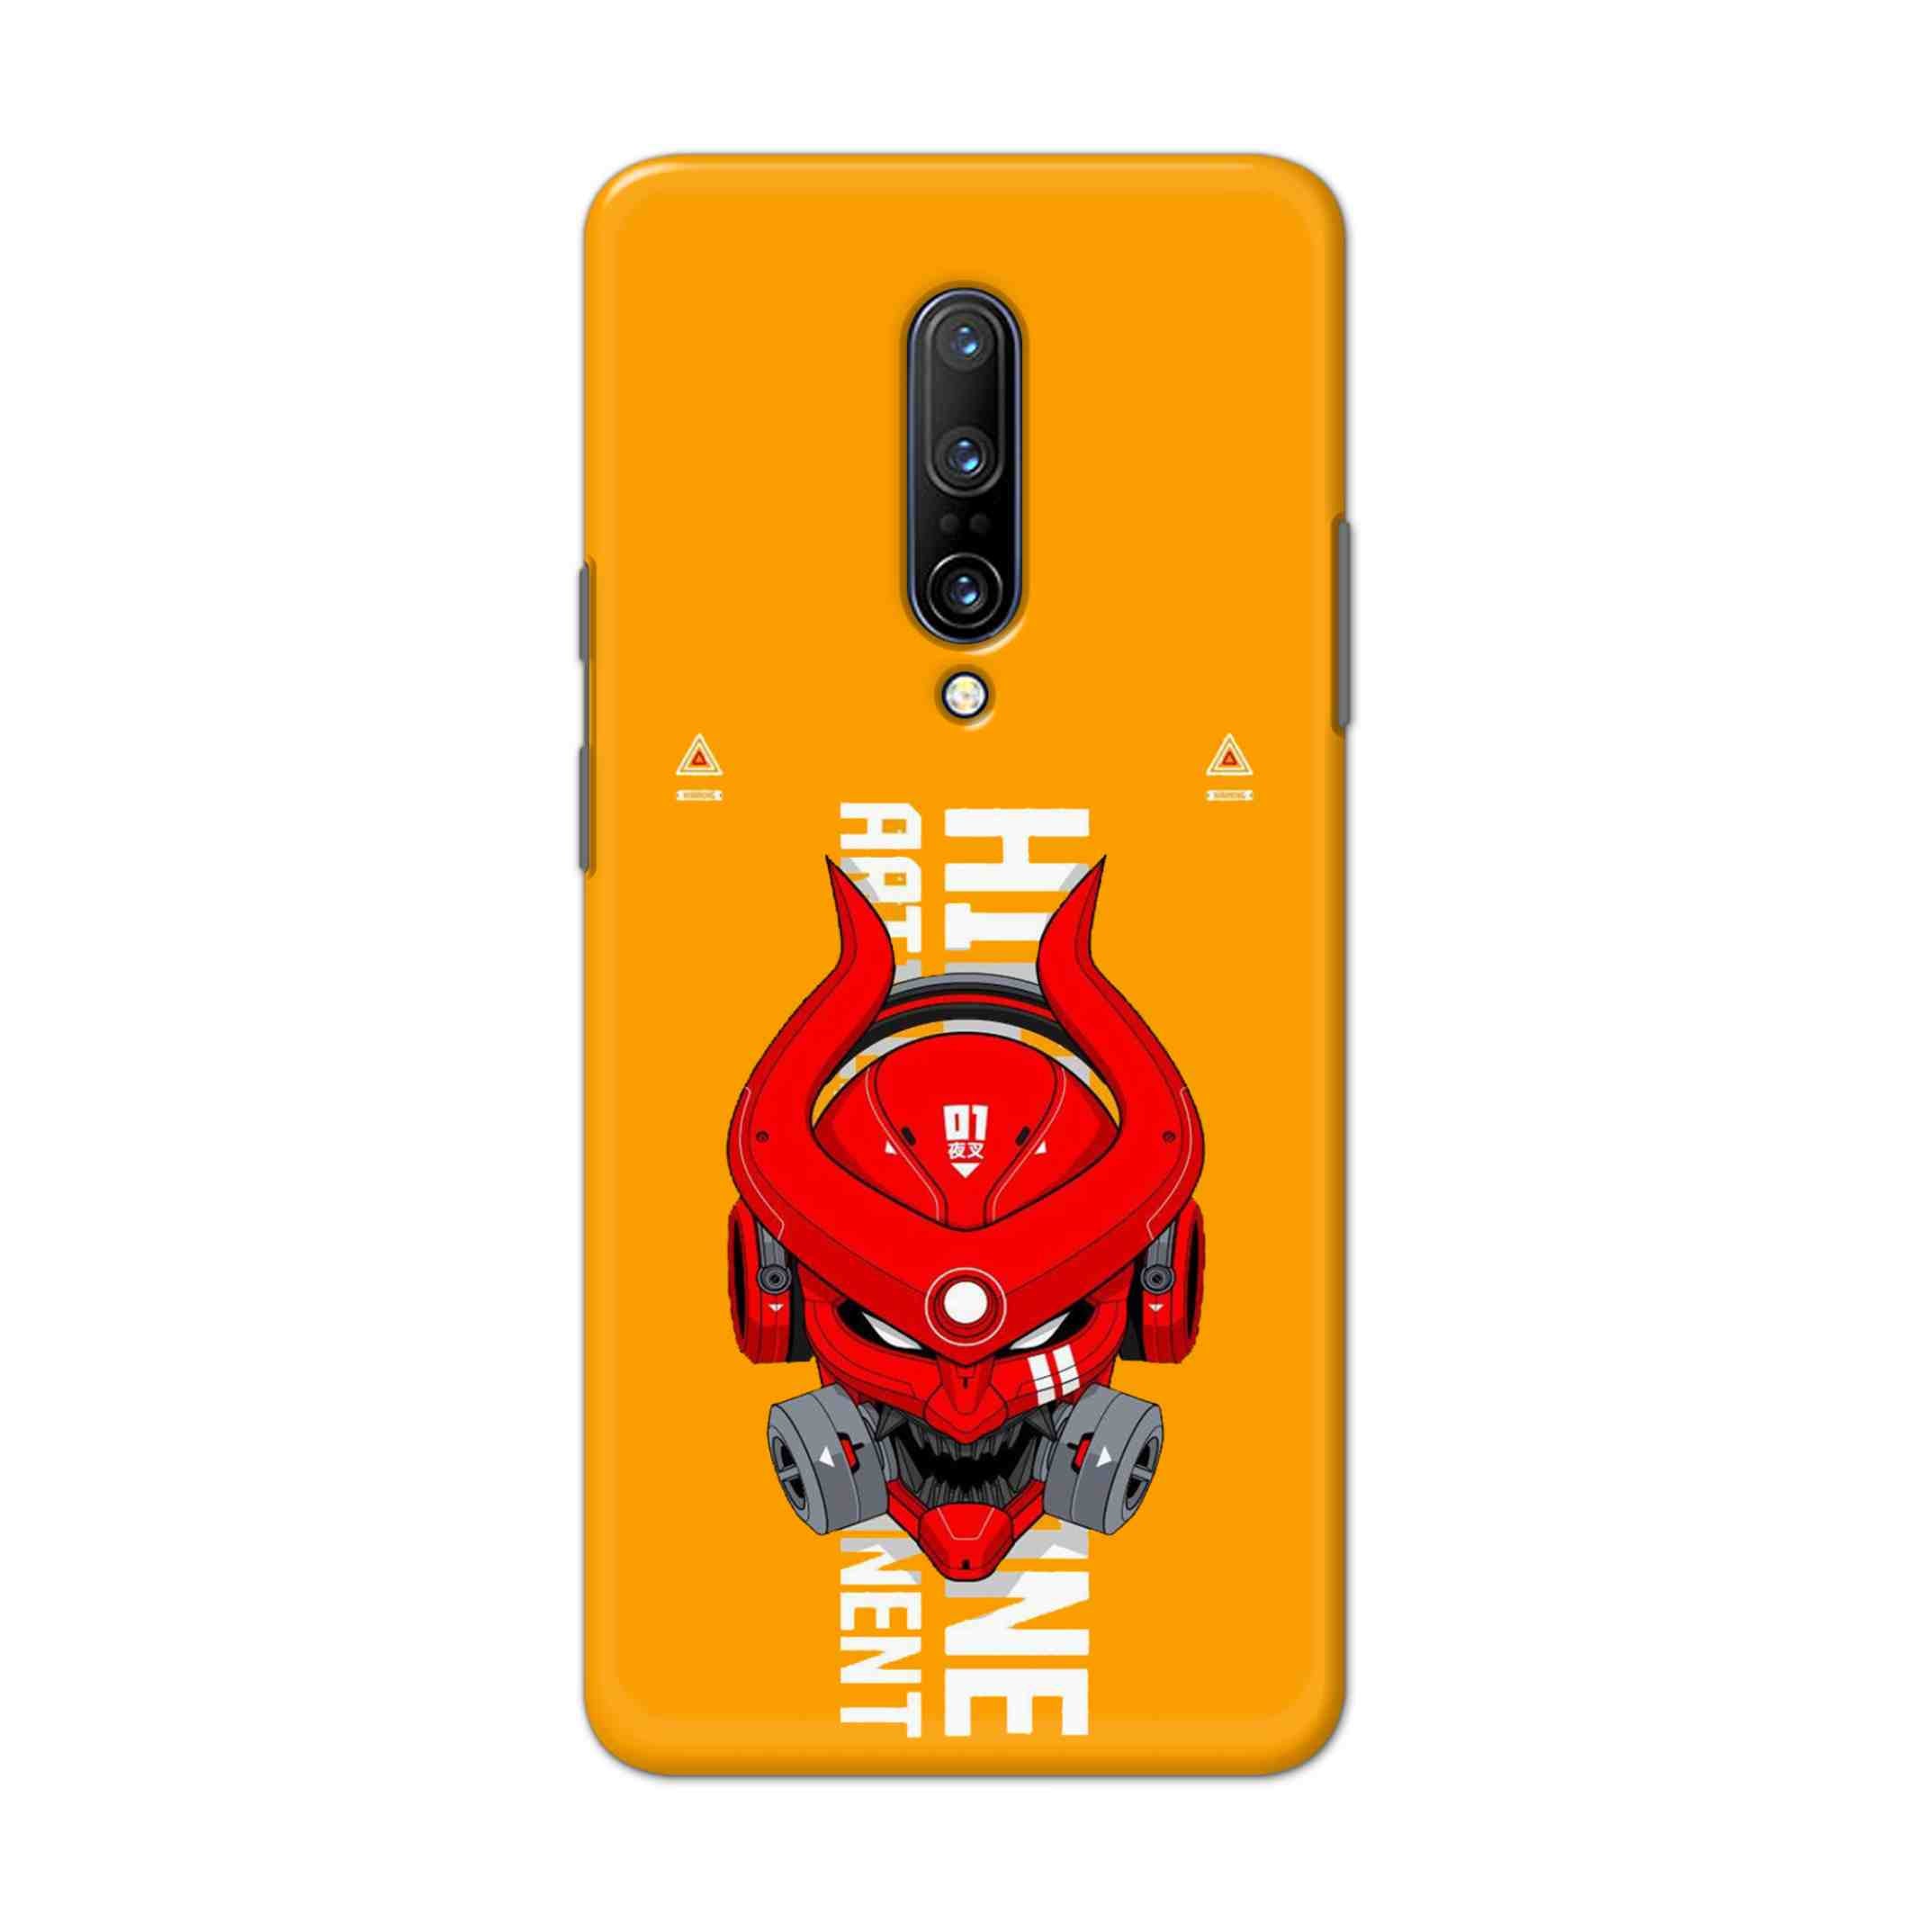 Buy Bull Skull Hard Back Mobile Phone Case Cover For OnePlus 7 Pro Online